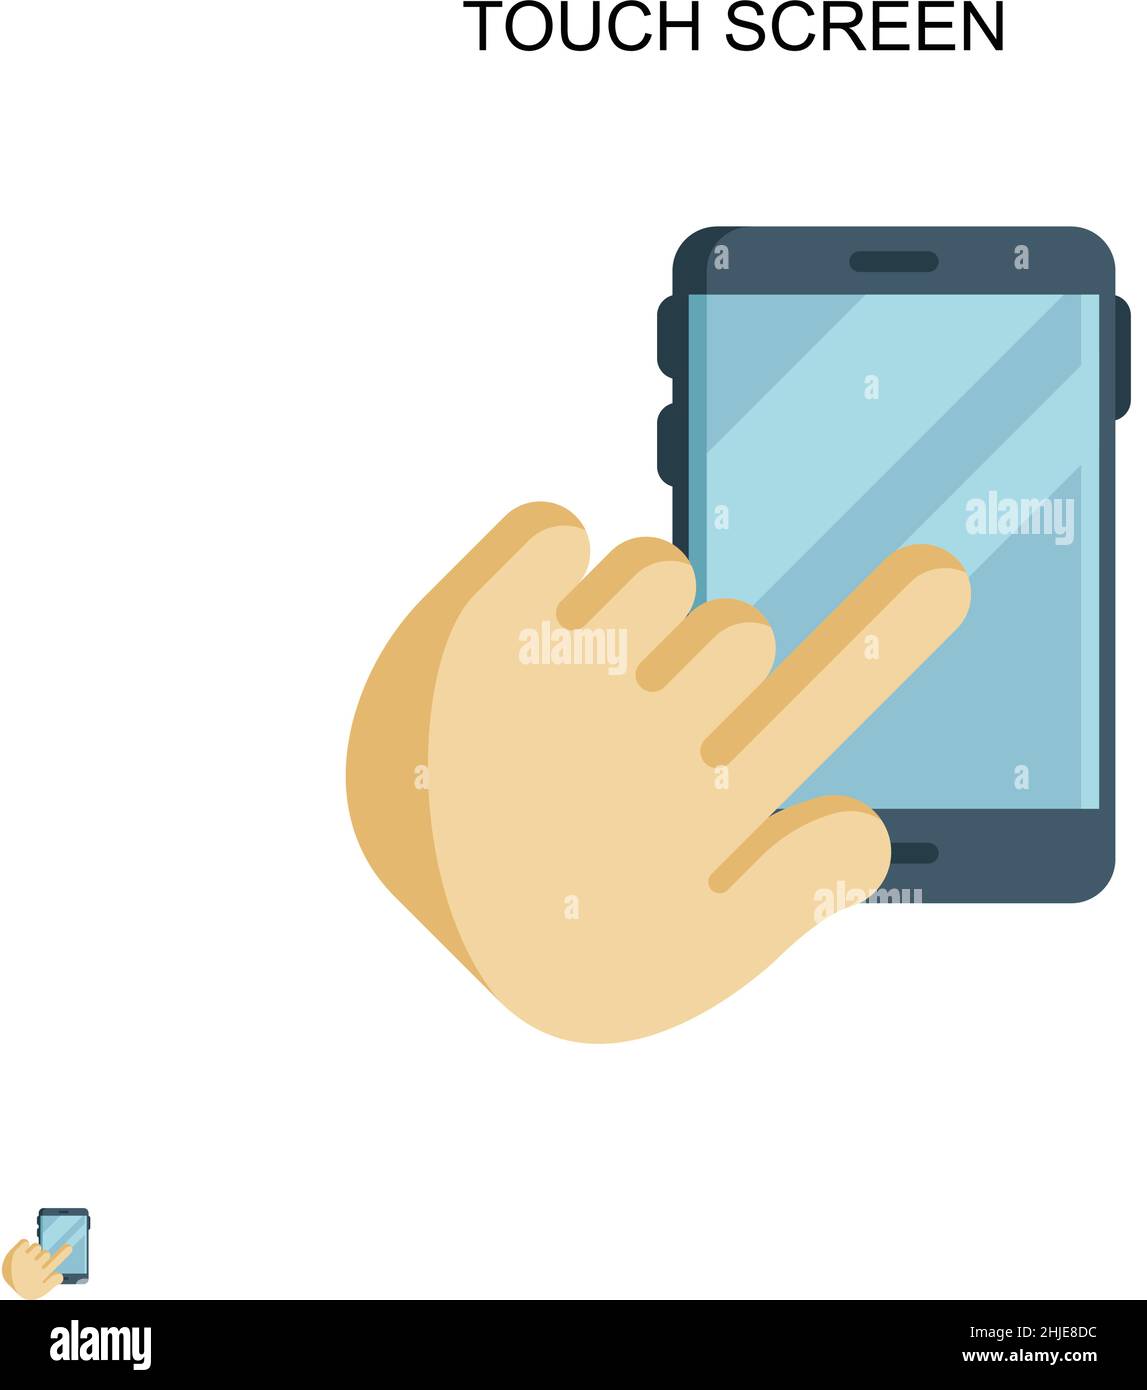 Einfaches Vektorsymbol auf dem Touchscreen. Illustration Symbol Design-Vorlage für Web mobile UI-Element. Stock Vektor